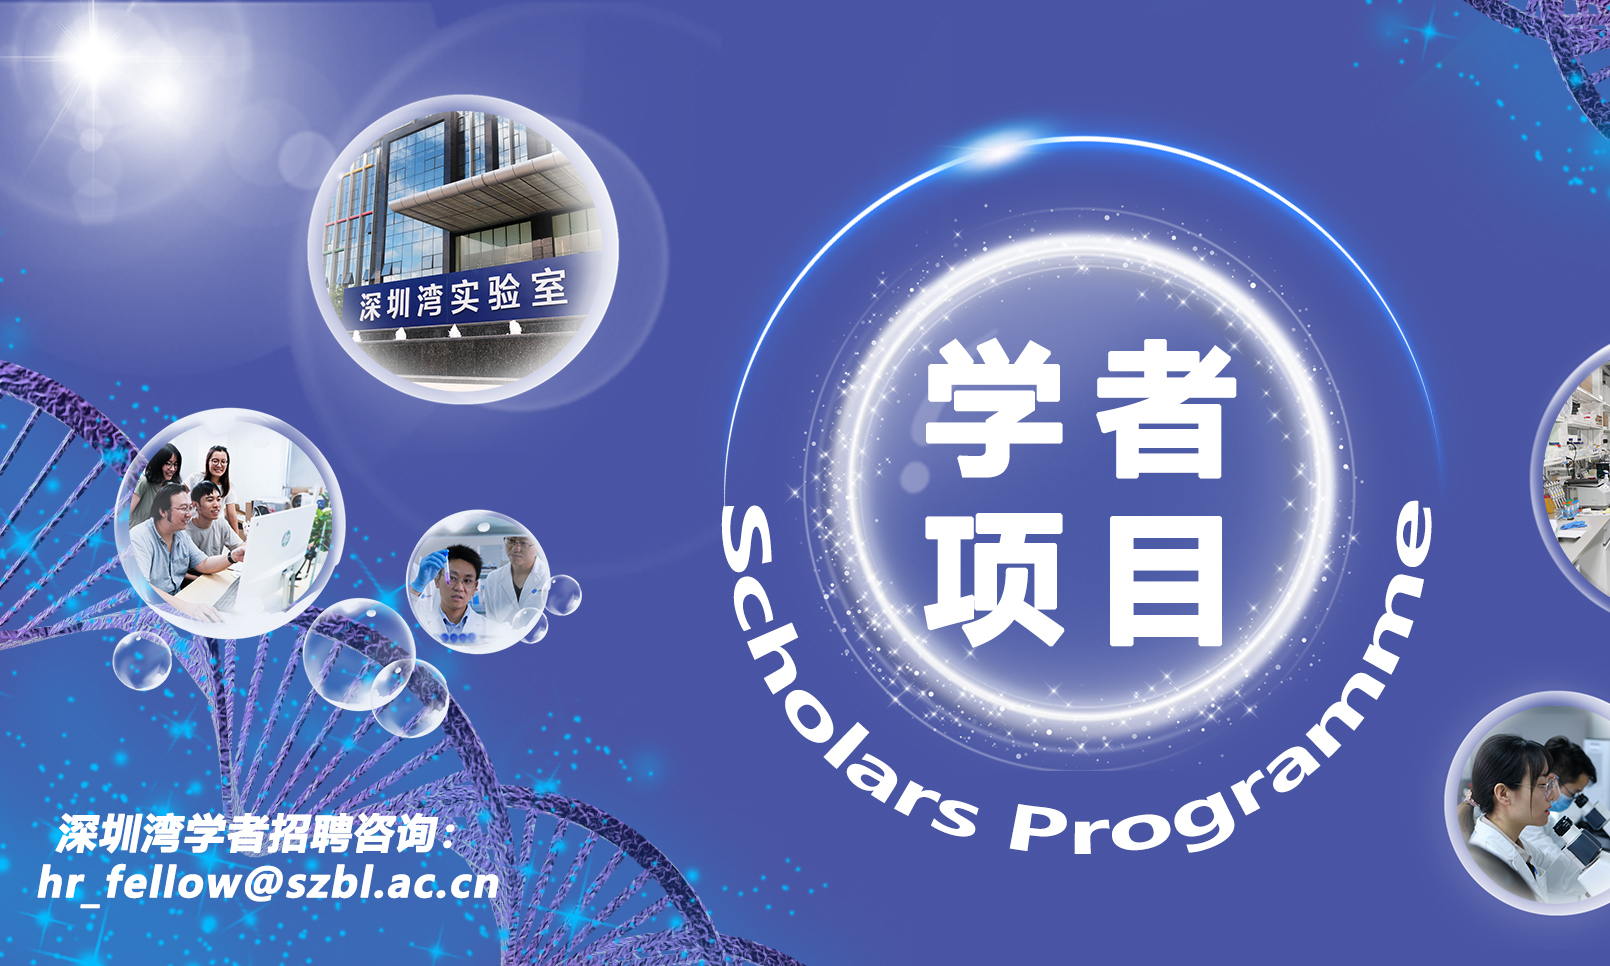 深圳湾学者全球招聘通知 Shenzhen Bay Scholars Programme in SZBL